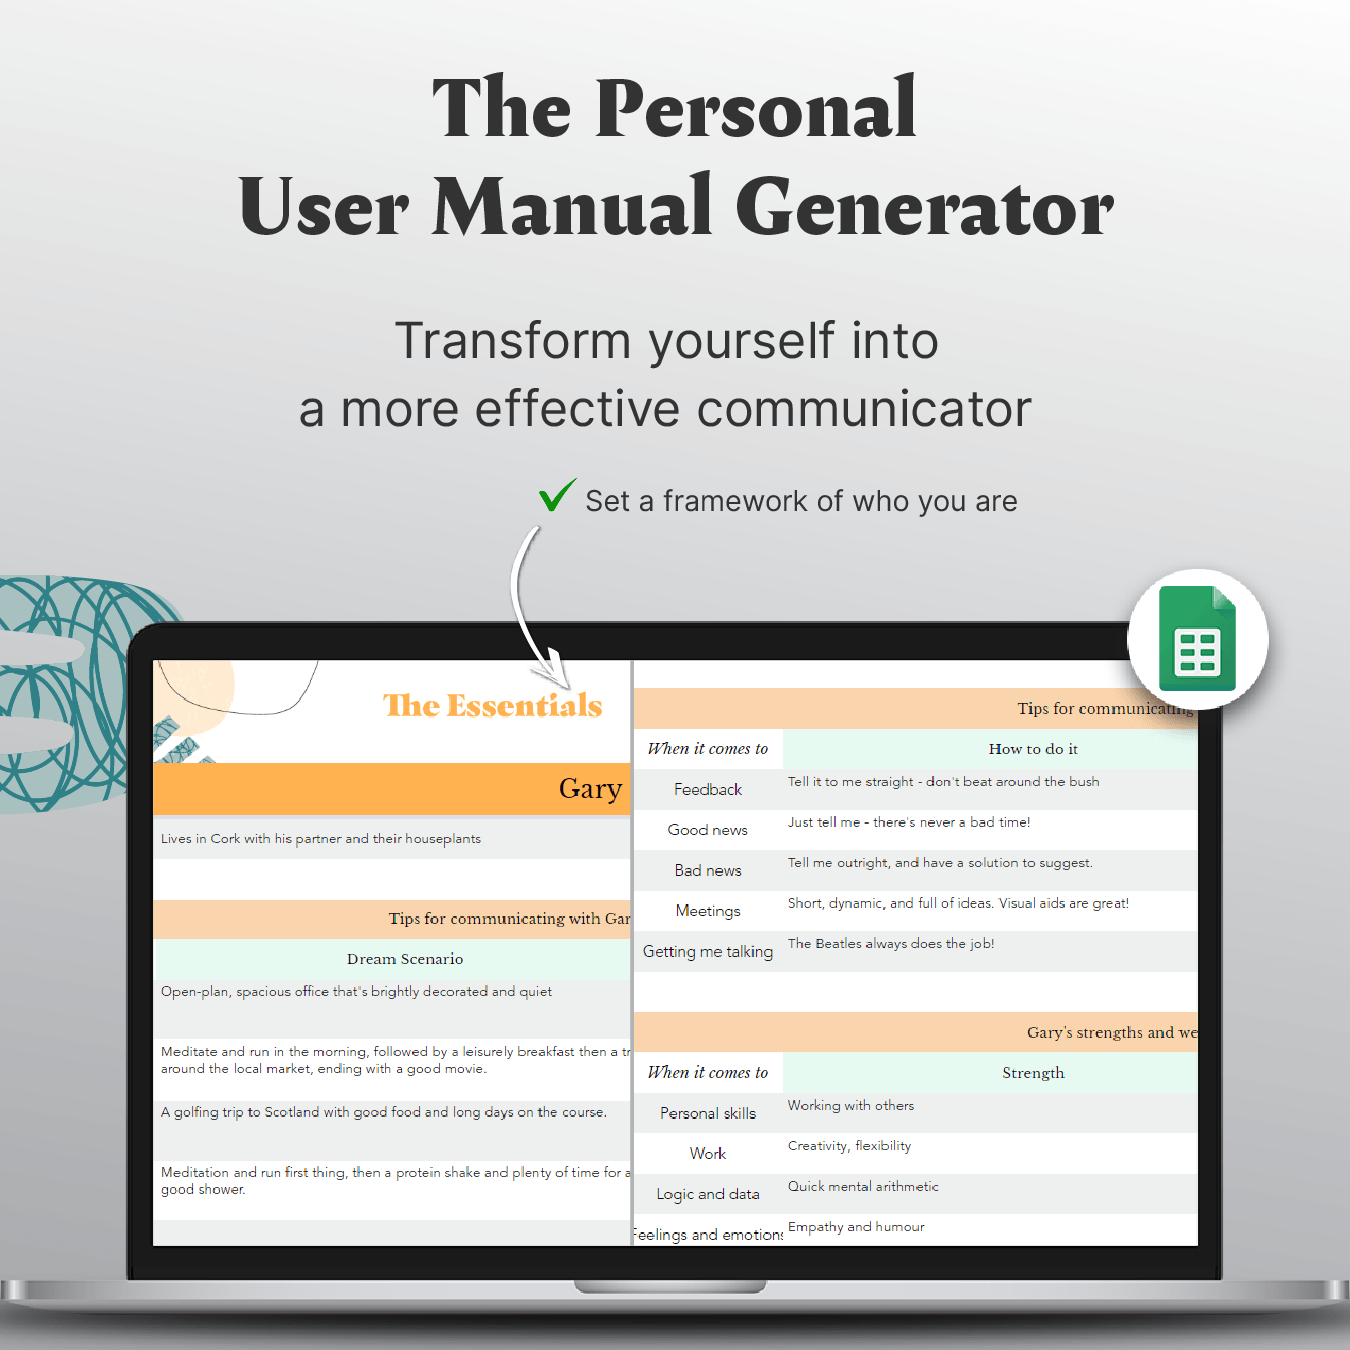 The Personal User Manual Generator